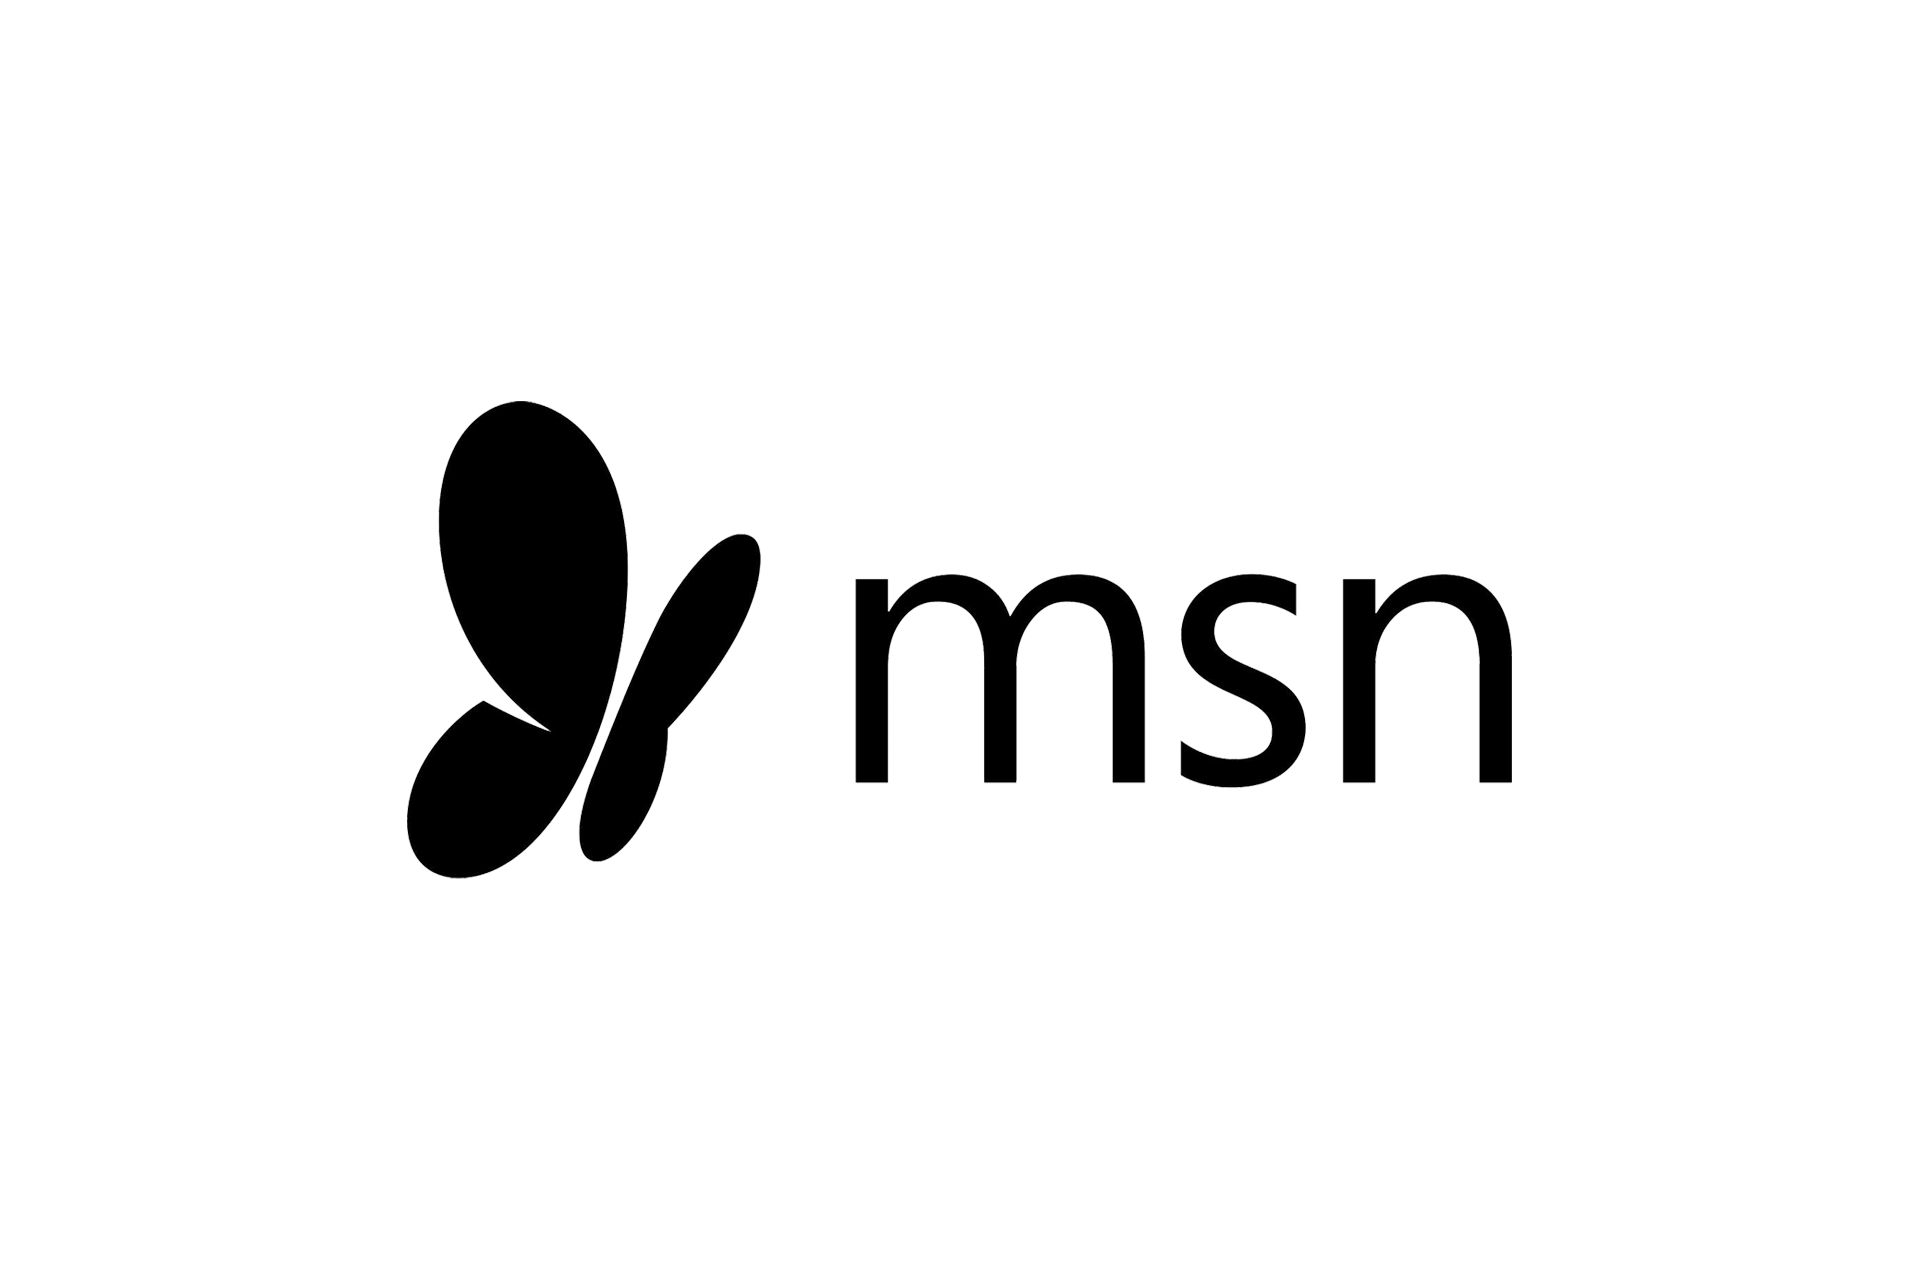 News_logos_0003_MSN.png